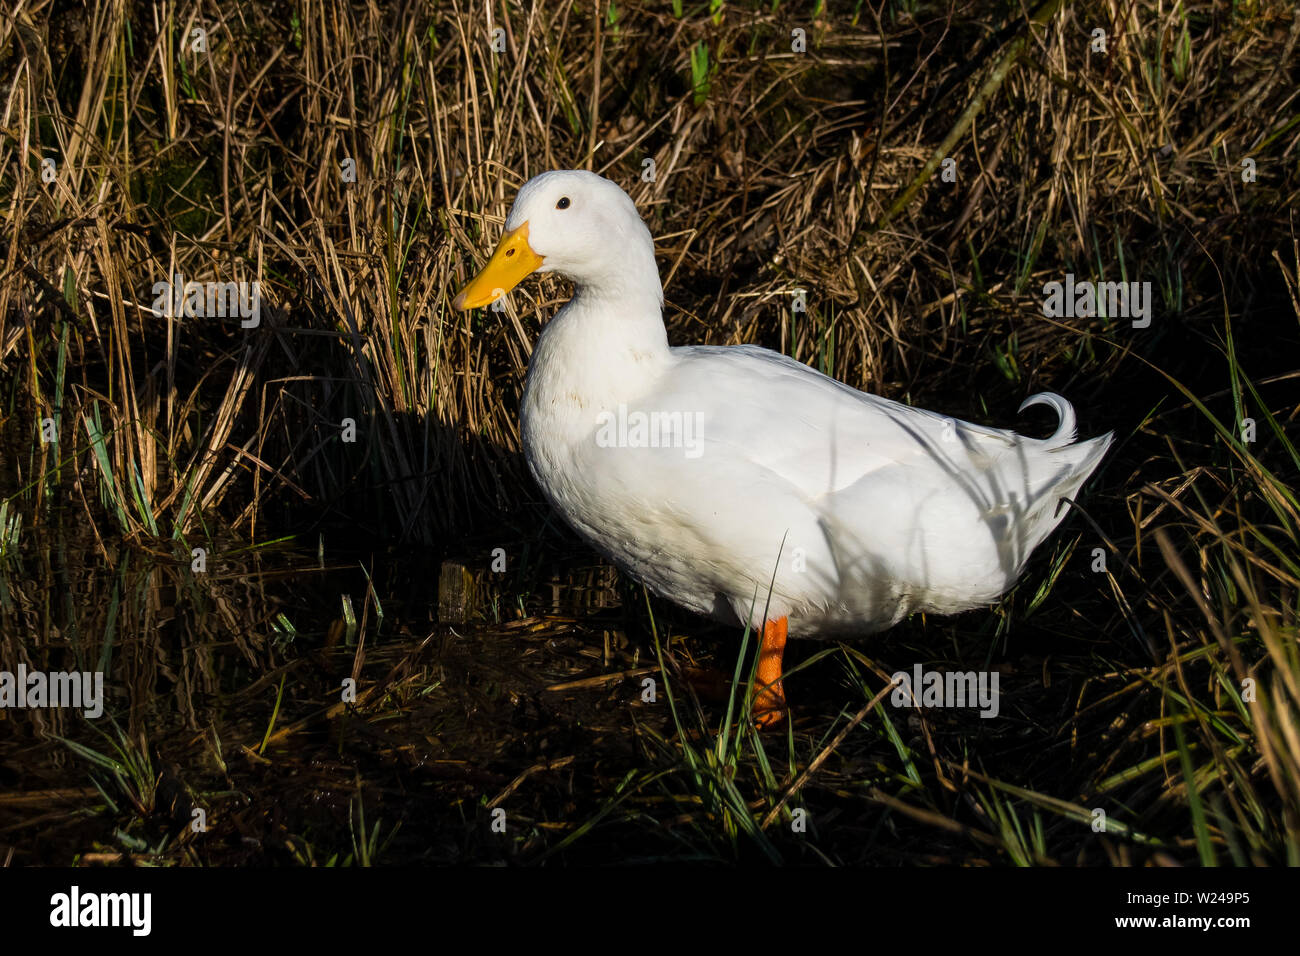 Portrait of a male drake Aylesbury (also known as Long Island, American Pekin or Pekin) duck in low level sunlight Stock Photo